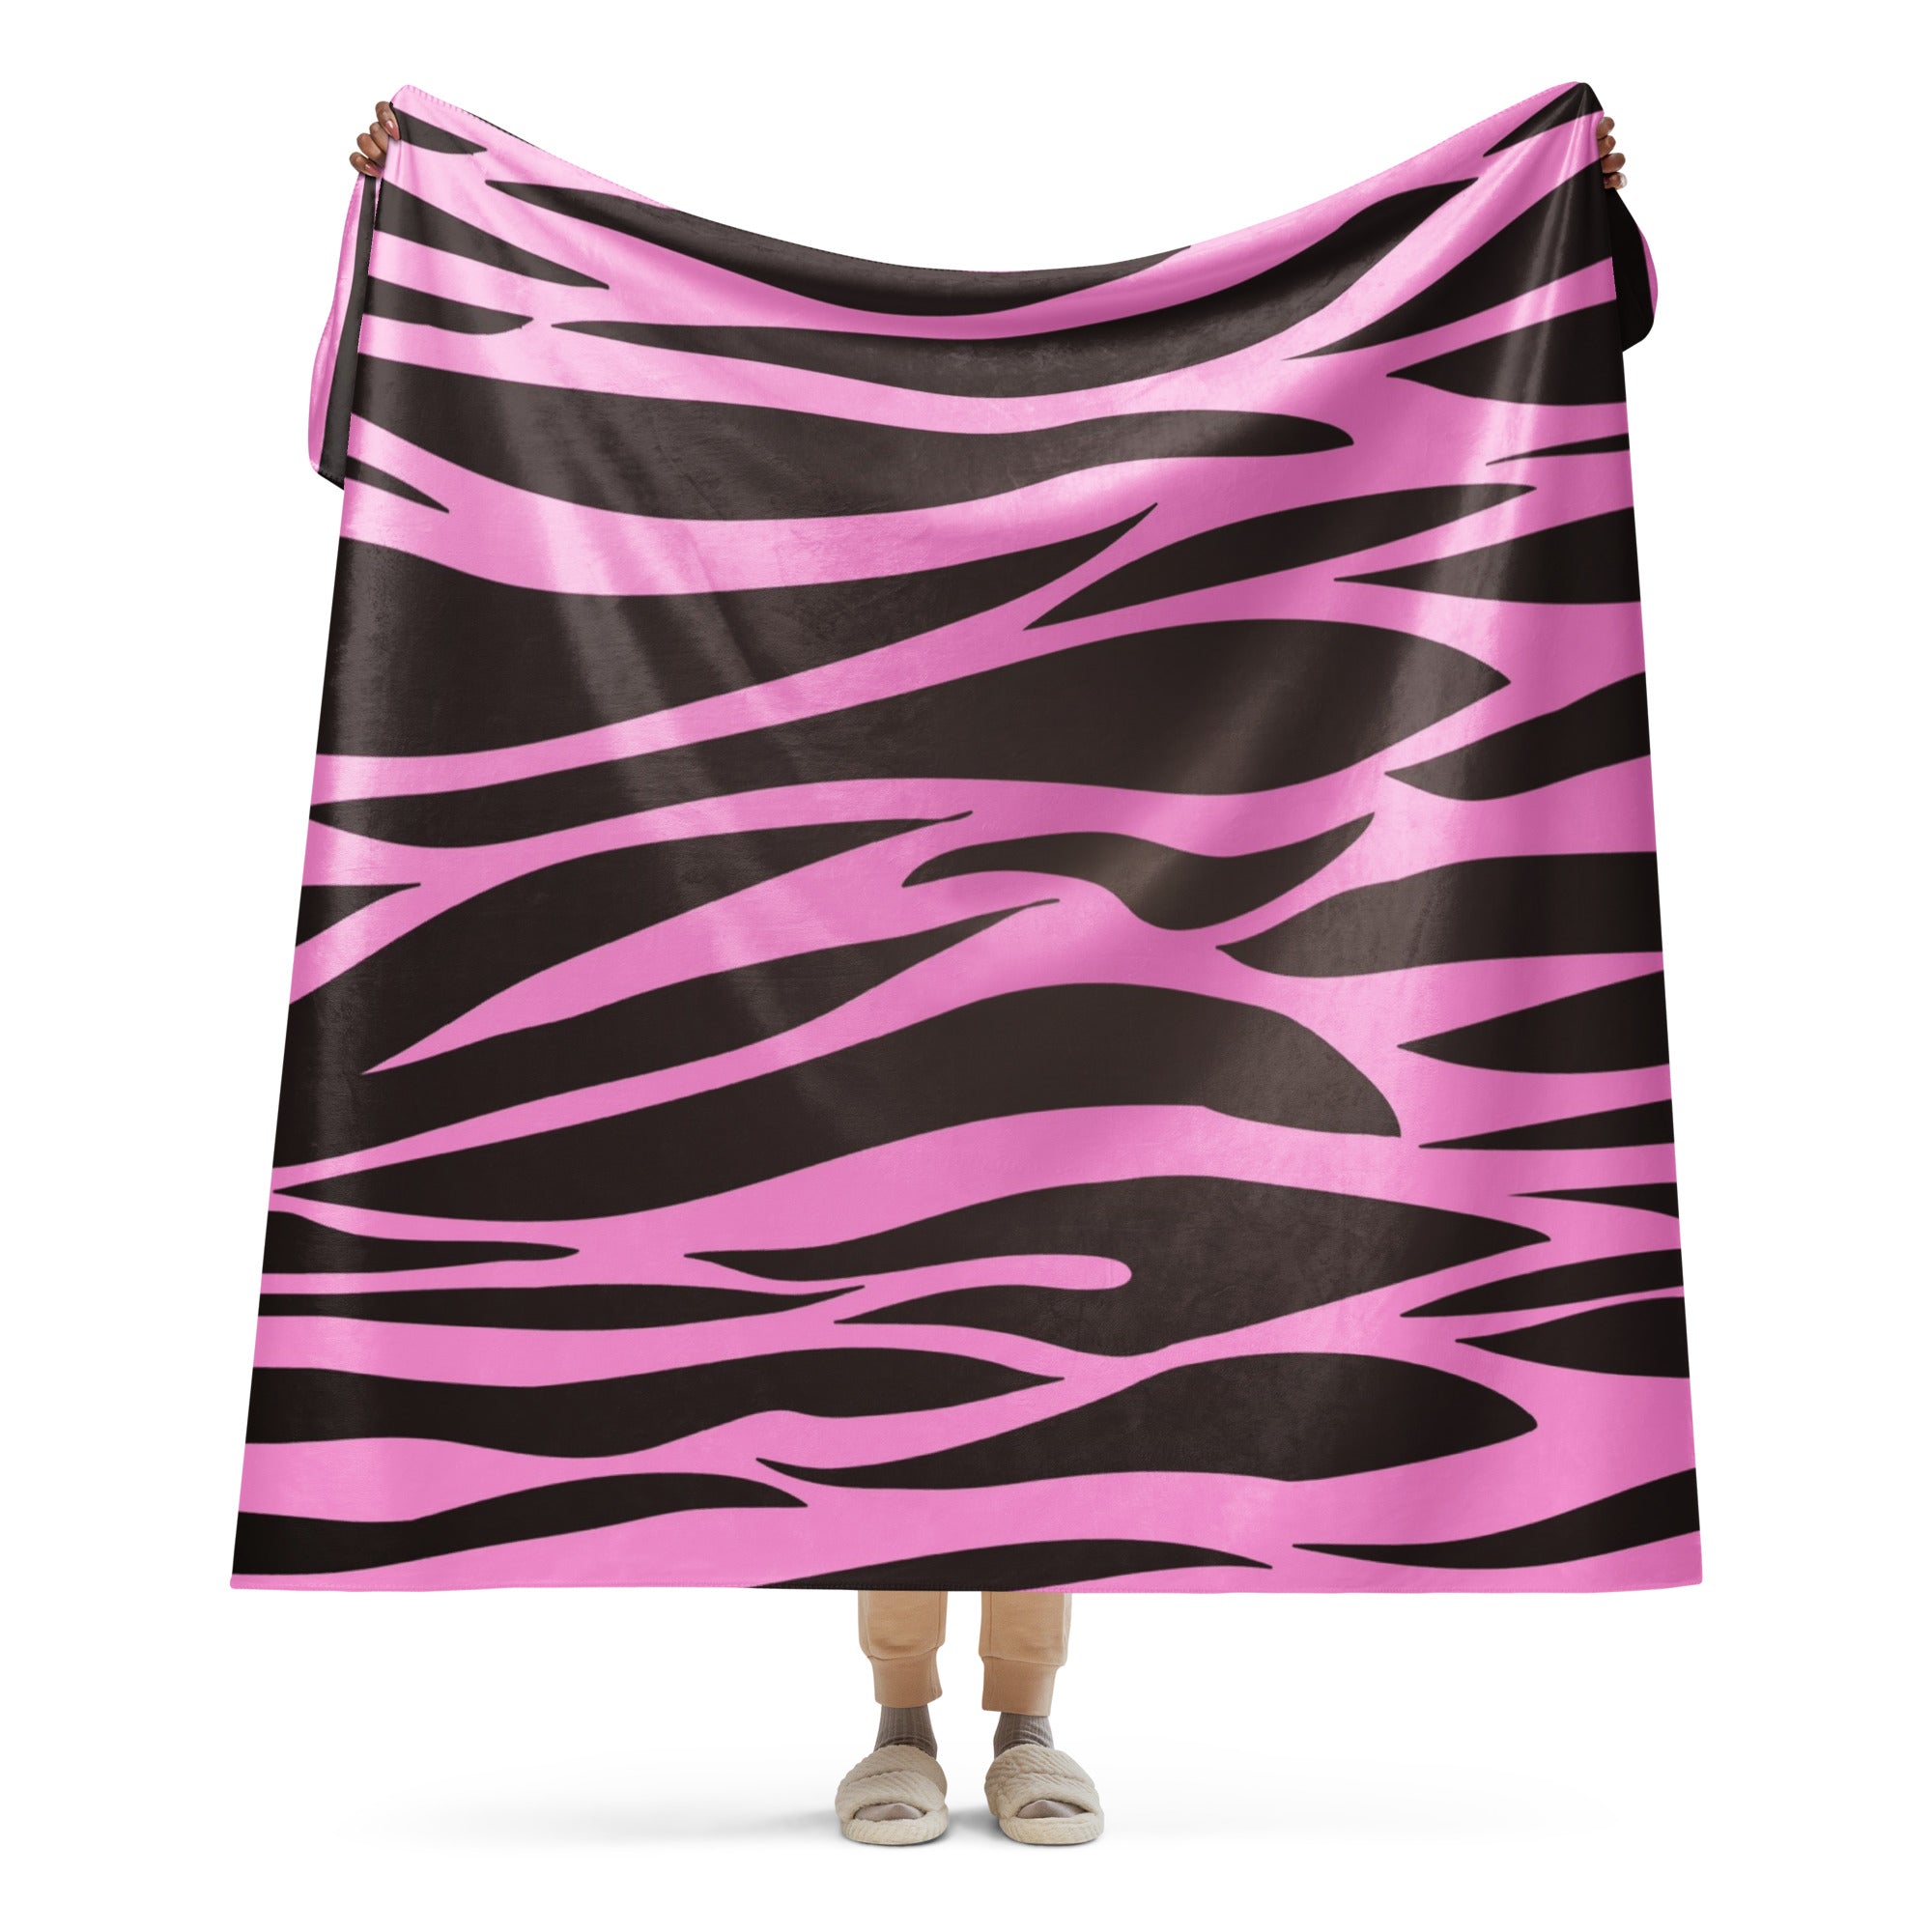 Zebra Pink and Black Sherpa blanket